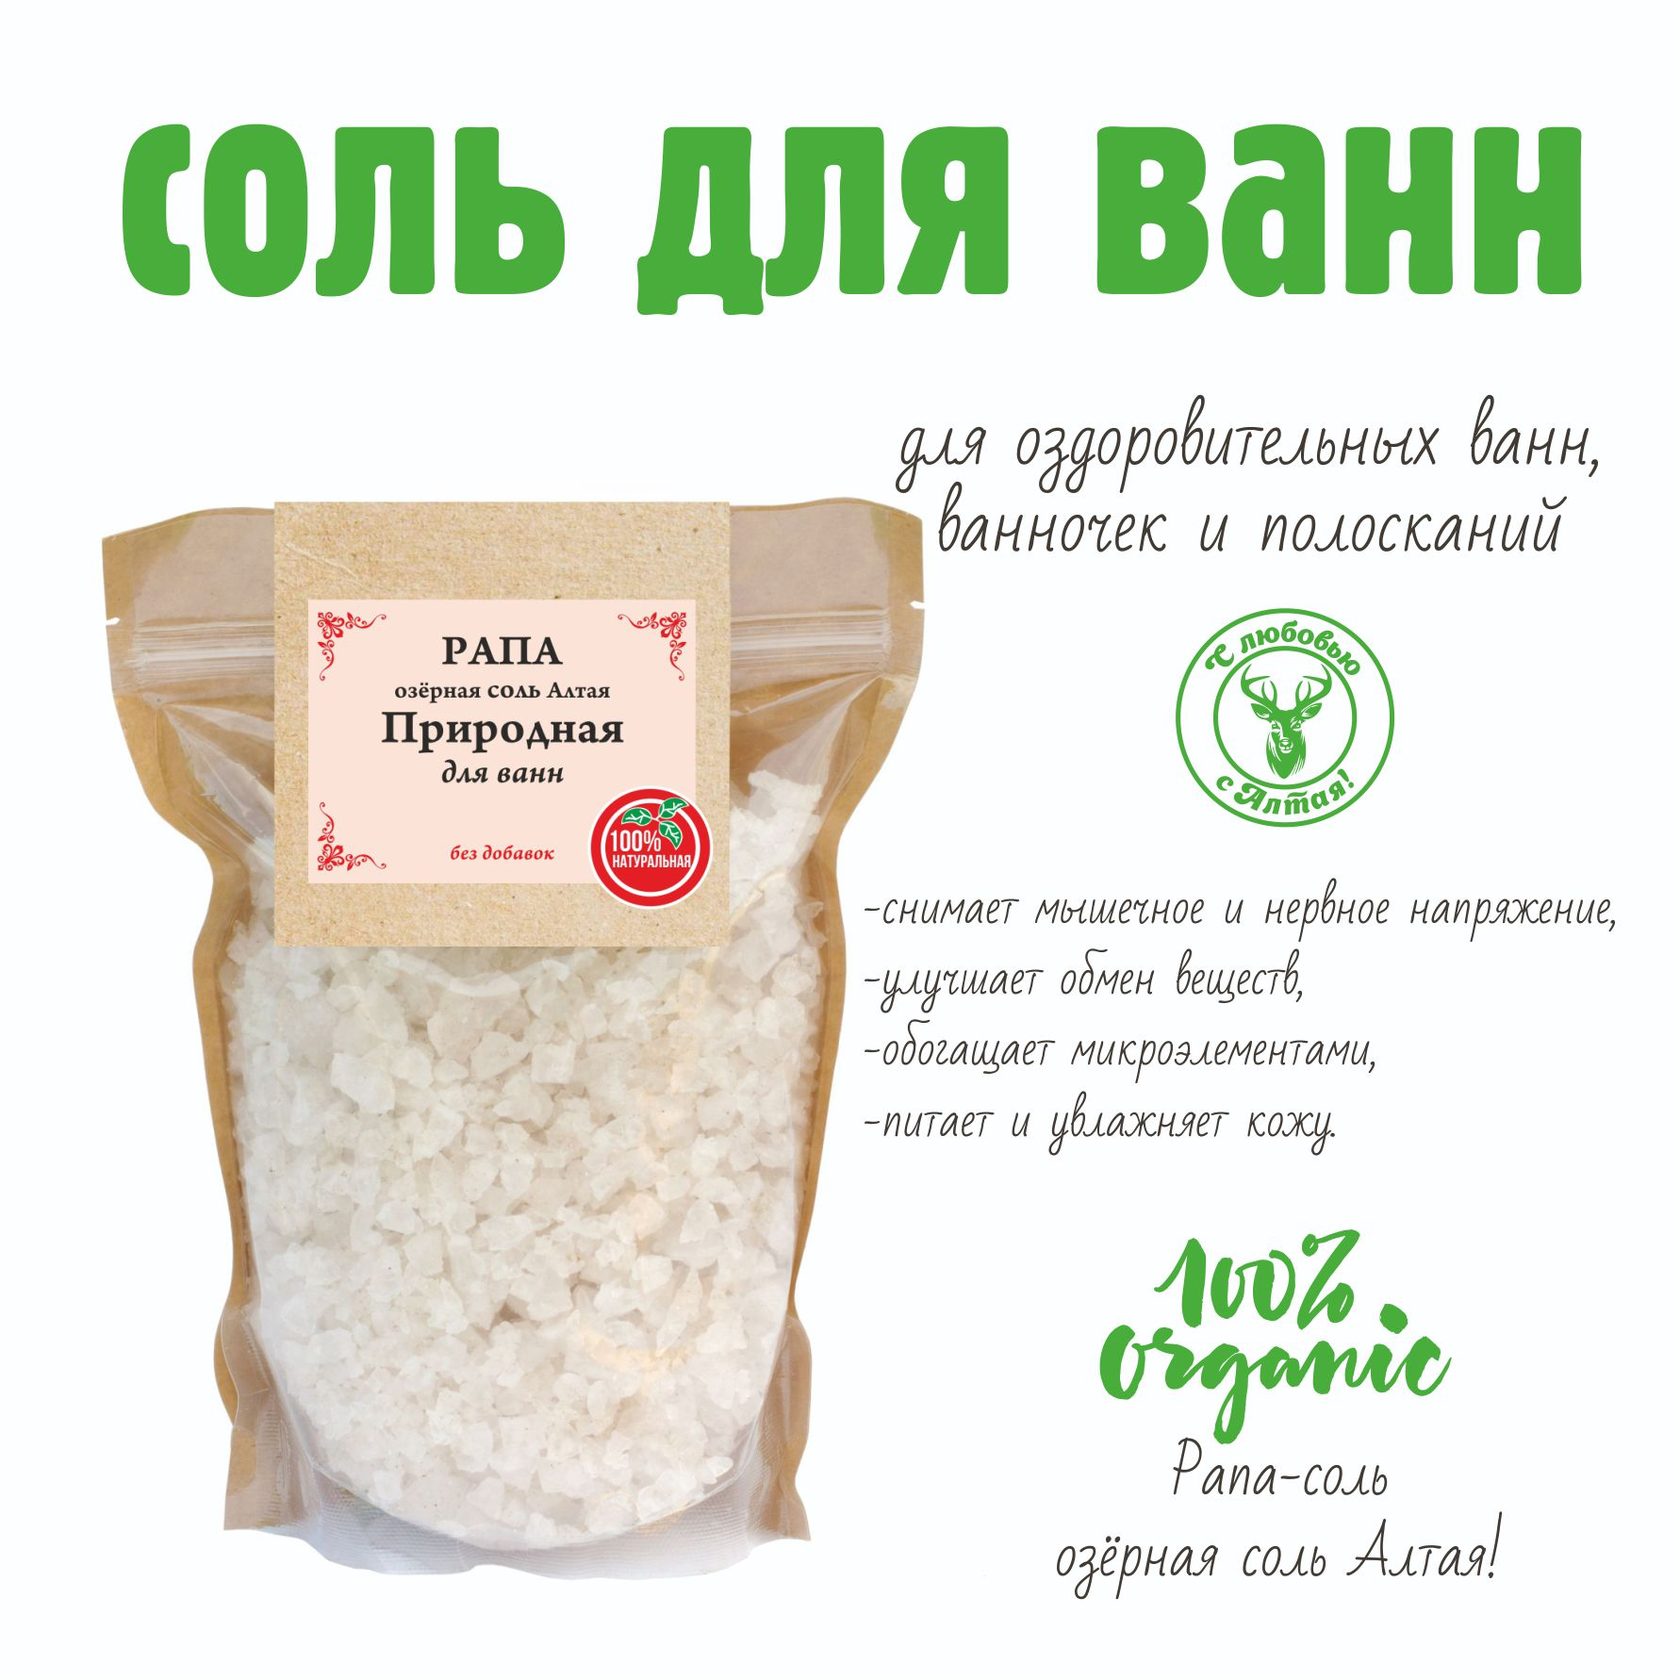 Купить соли для ванн в новосибирске марихуана и знаменитости